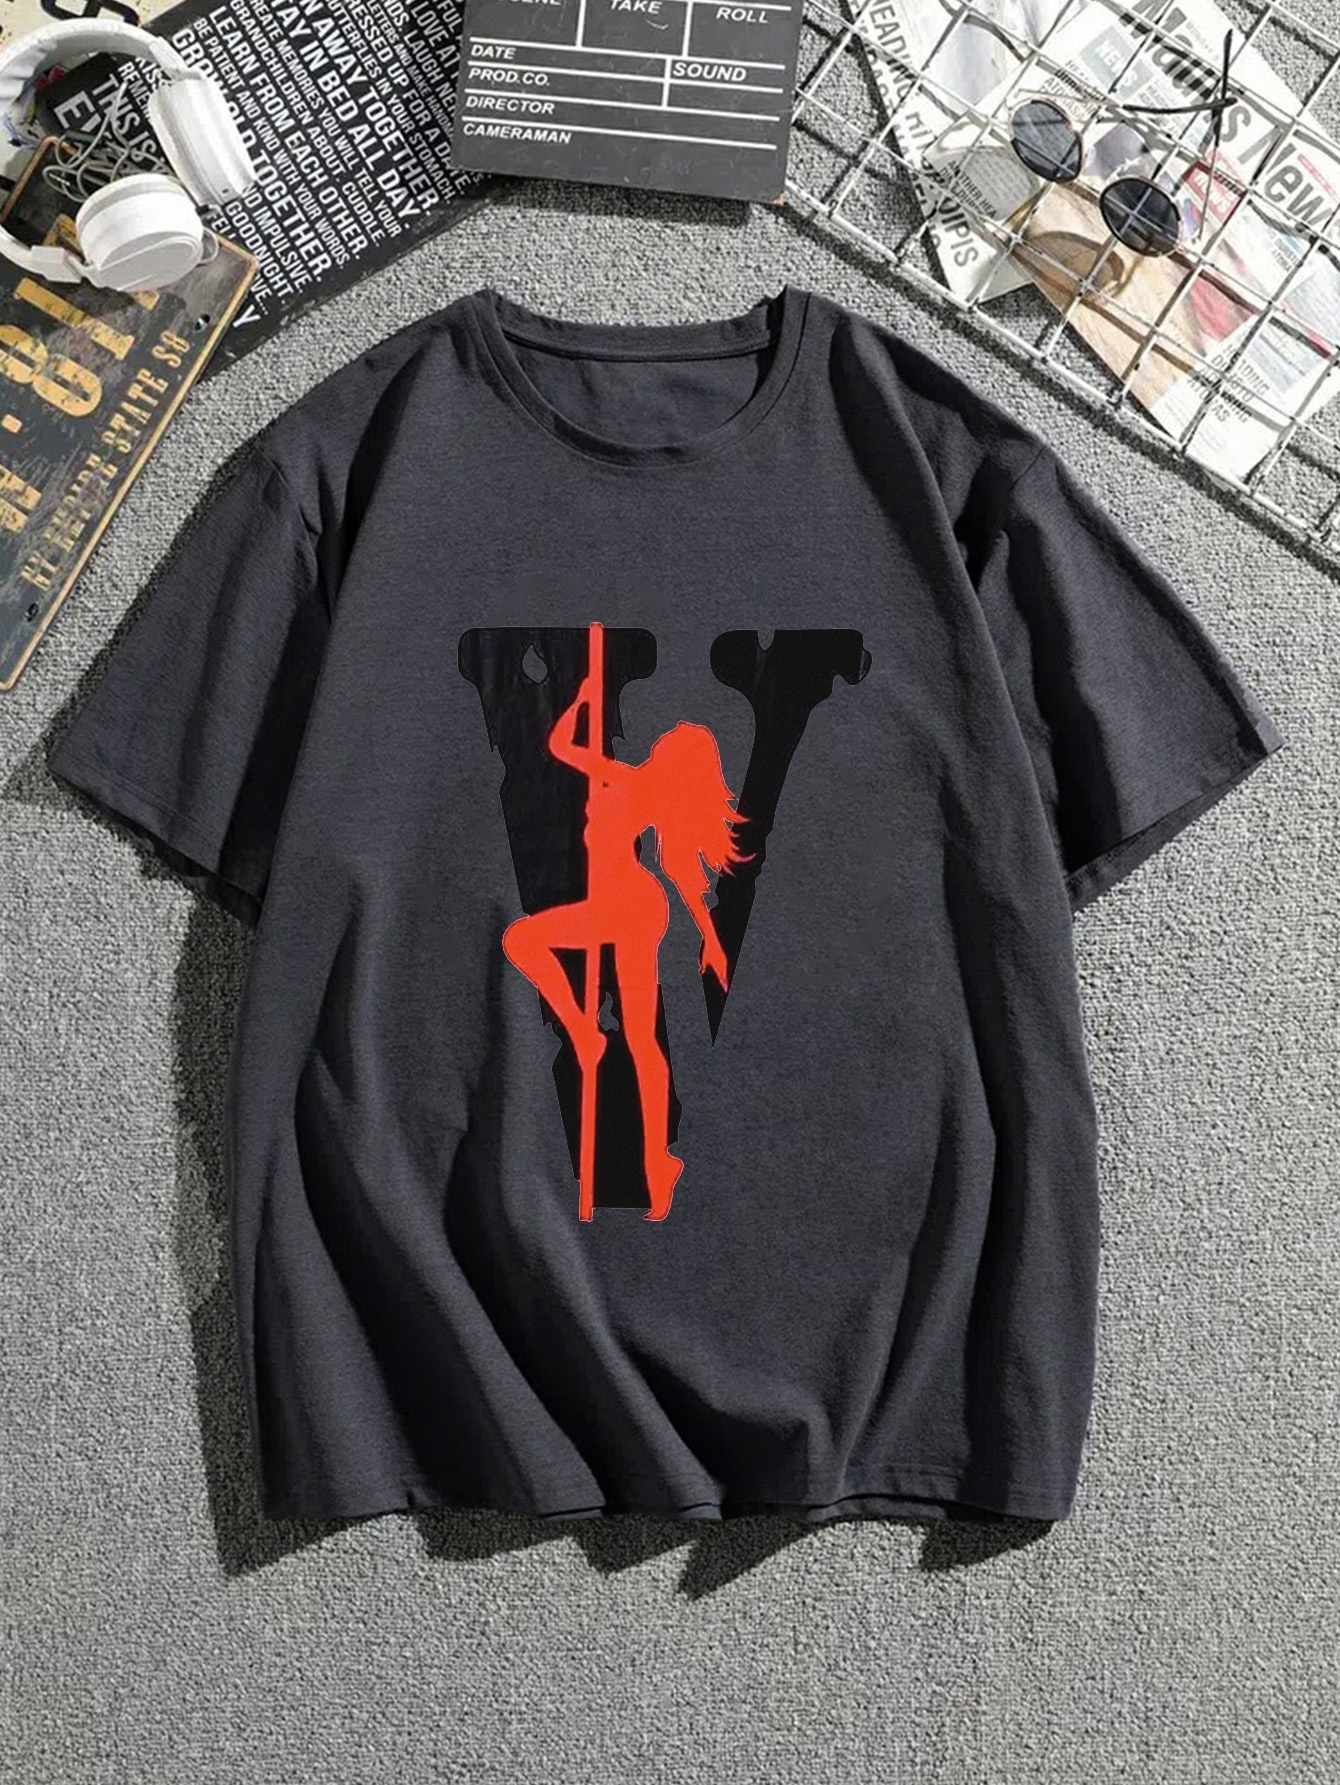 Camisetas de Hip-Hop para hombres y mujeres, camisas con estampado